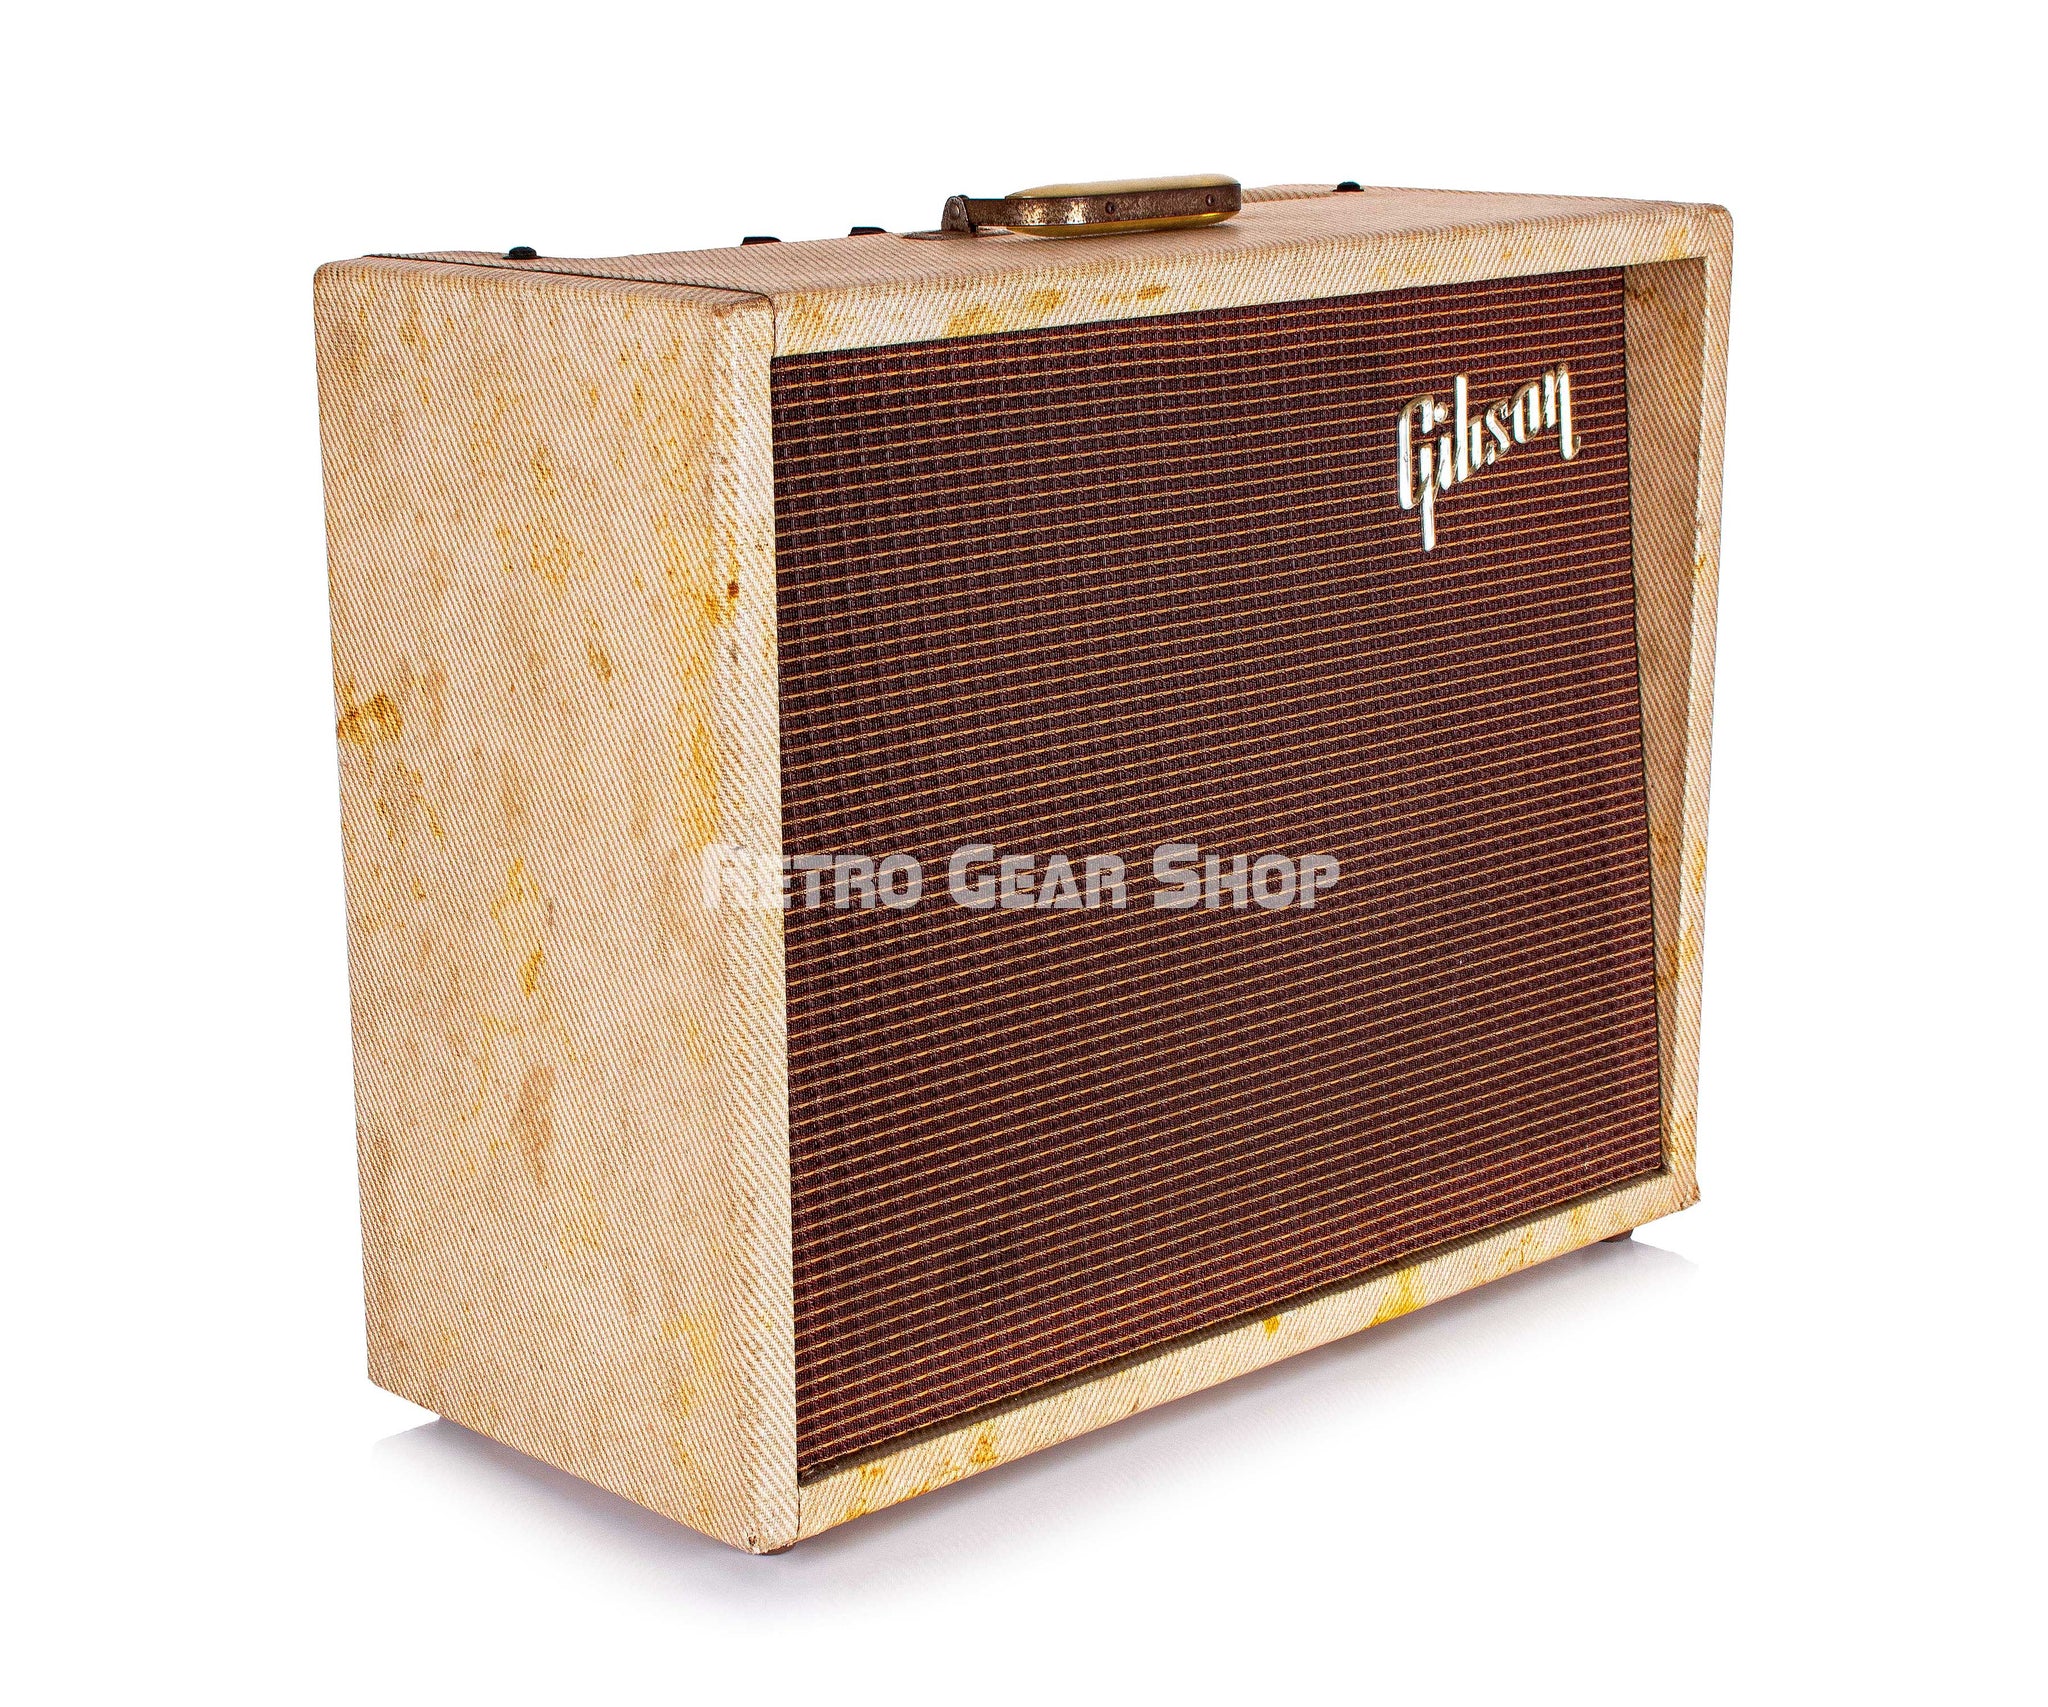 Gibson GA-18 Explorer Rare Vintage Tube Amplifier Guitar Combo Amp